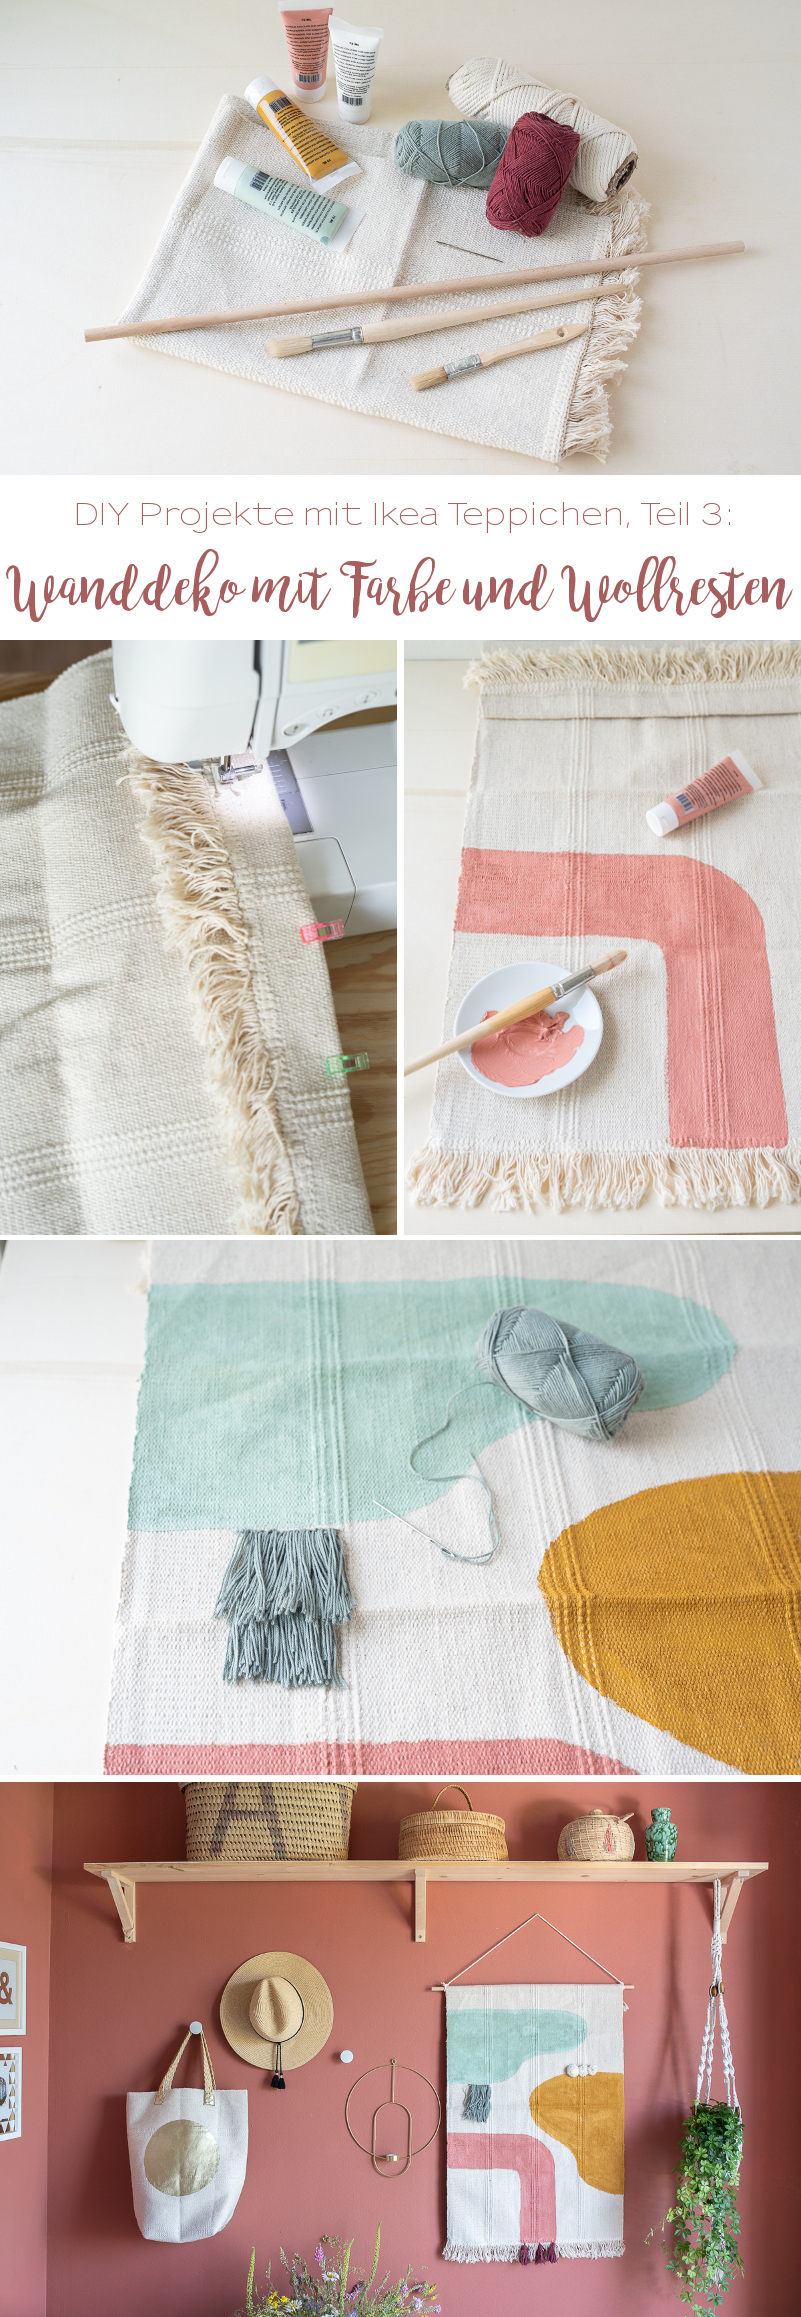 Anleitung für einen einfachen, schnellen Wanddeko Wandteppich im Boho Look mit Teppich von Ikea, Acrylfarbe und Wollrresten